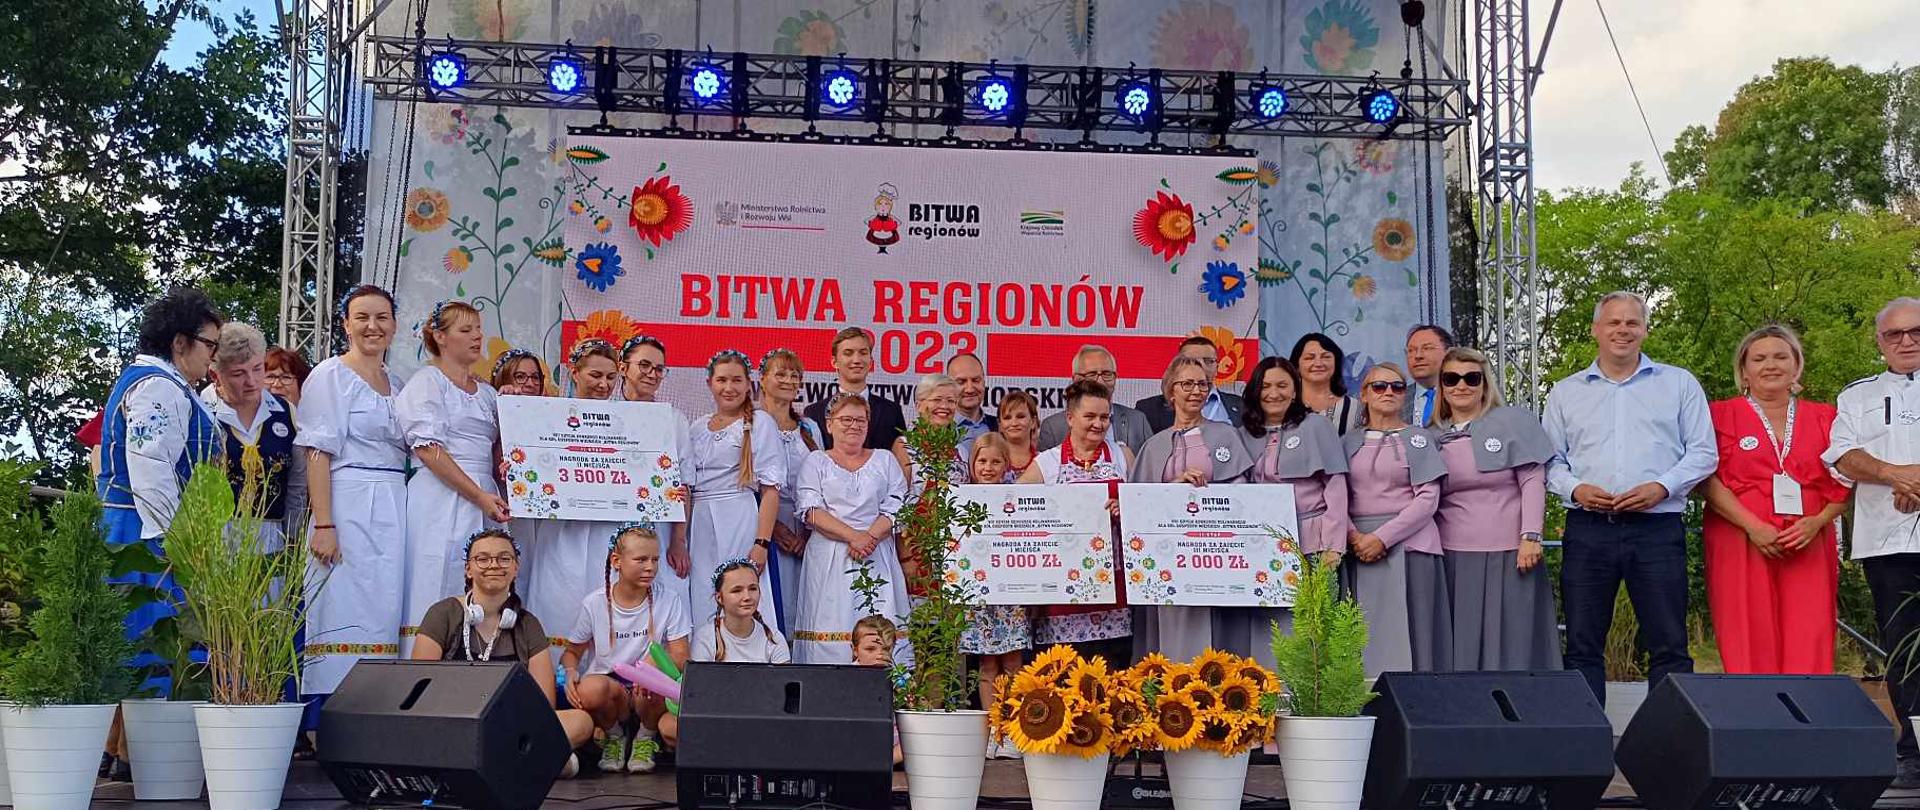 Laureaci i laureatki II etapu konkursu kulinarnego Bitwa Regionów w strojach organizacyjnych z dyplomami na scenie